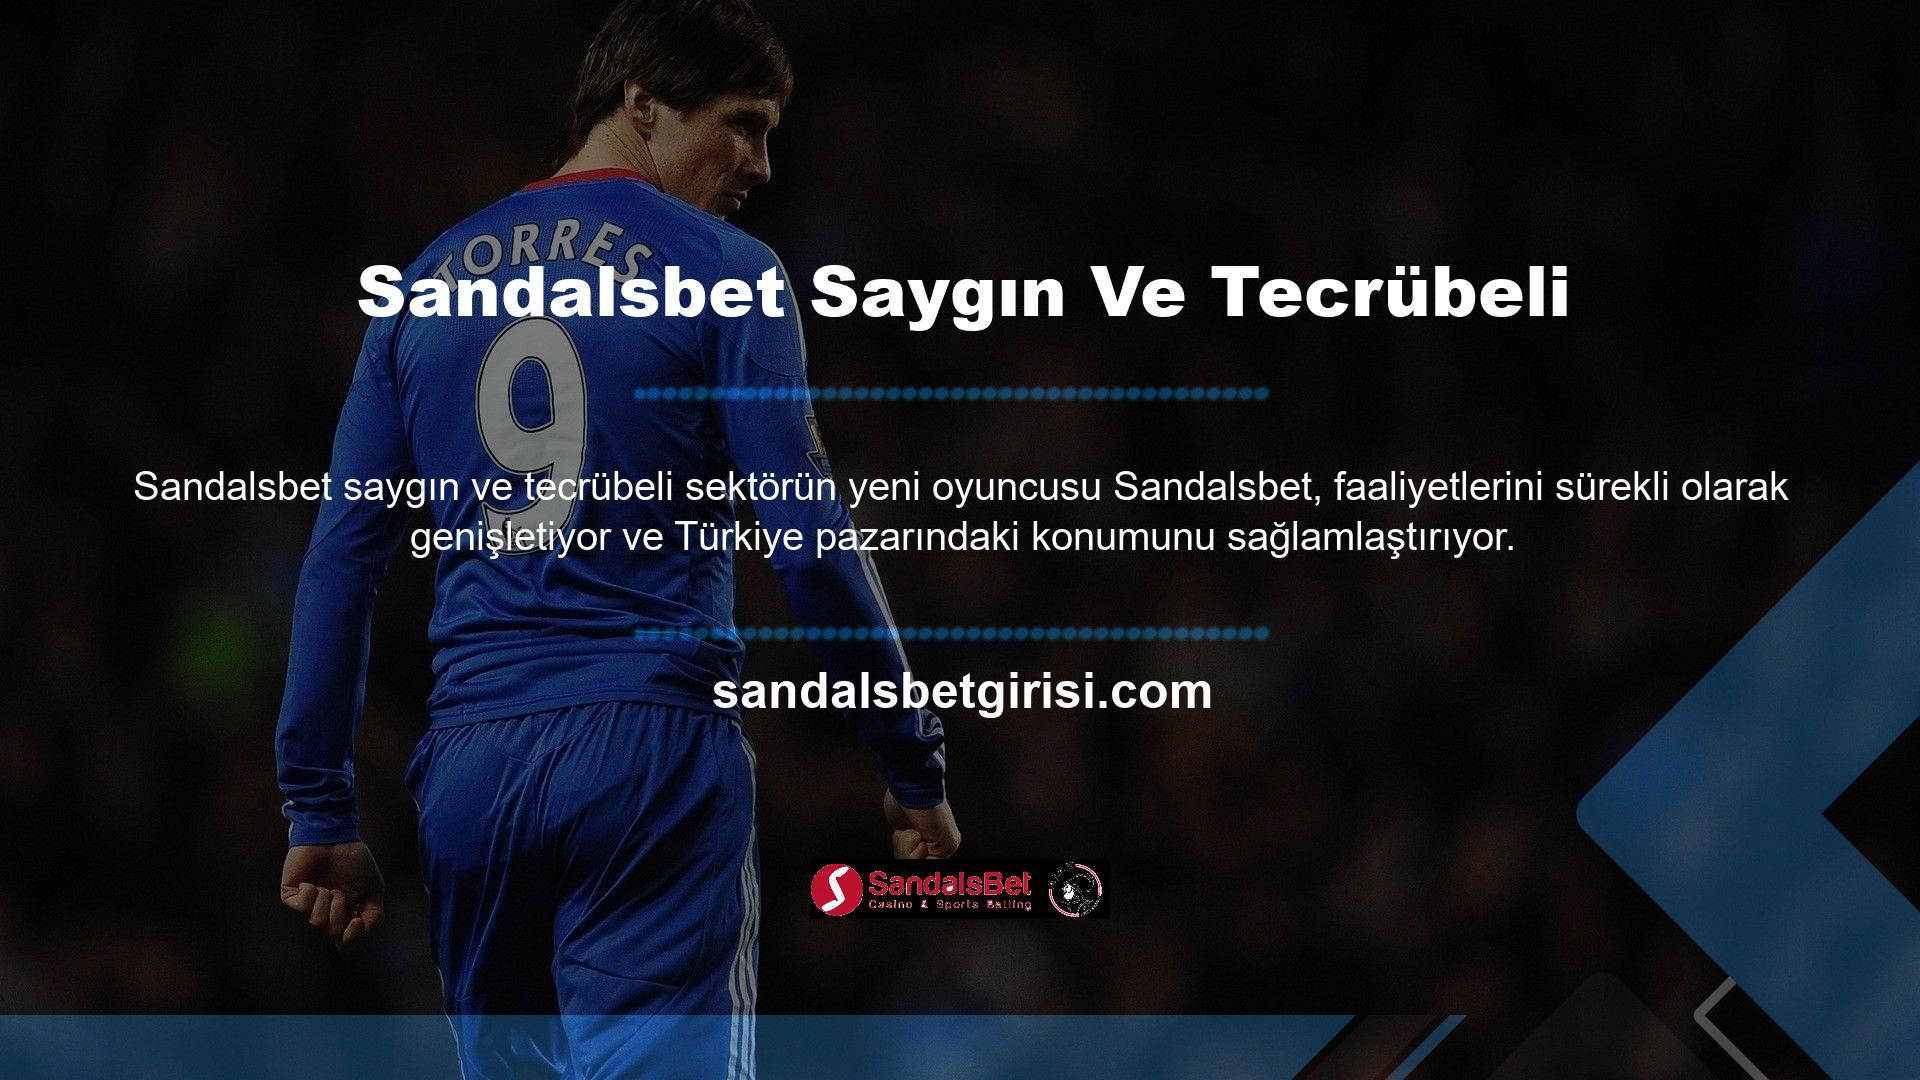 Sandalsbet ismi Türkiye’de pek bilinmese de Avrupa’da saygın ve tecrübeli bir isim gibi görünüyor